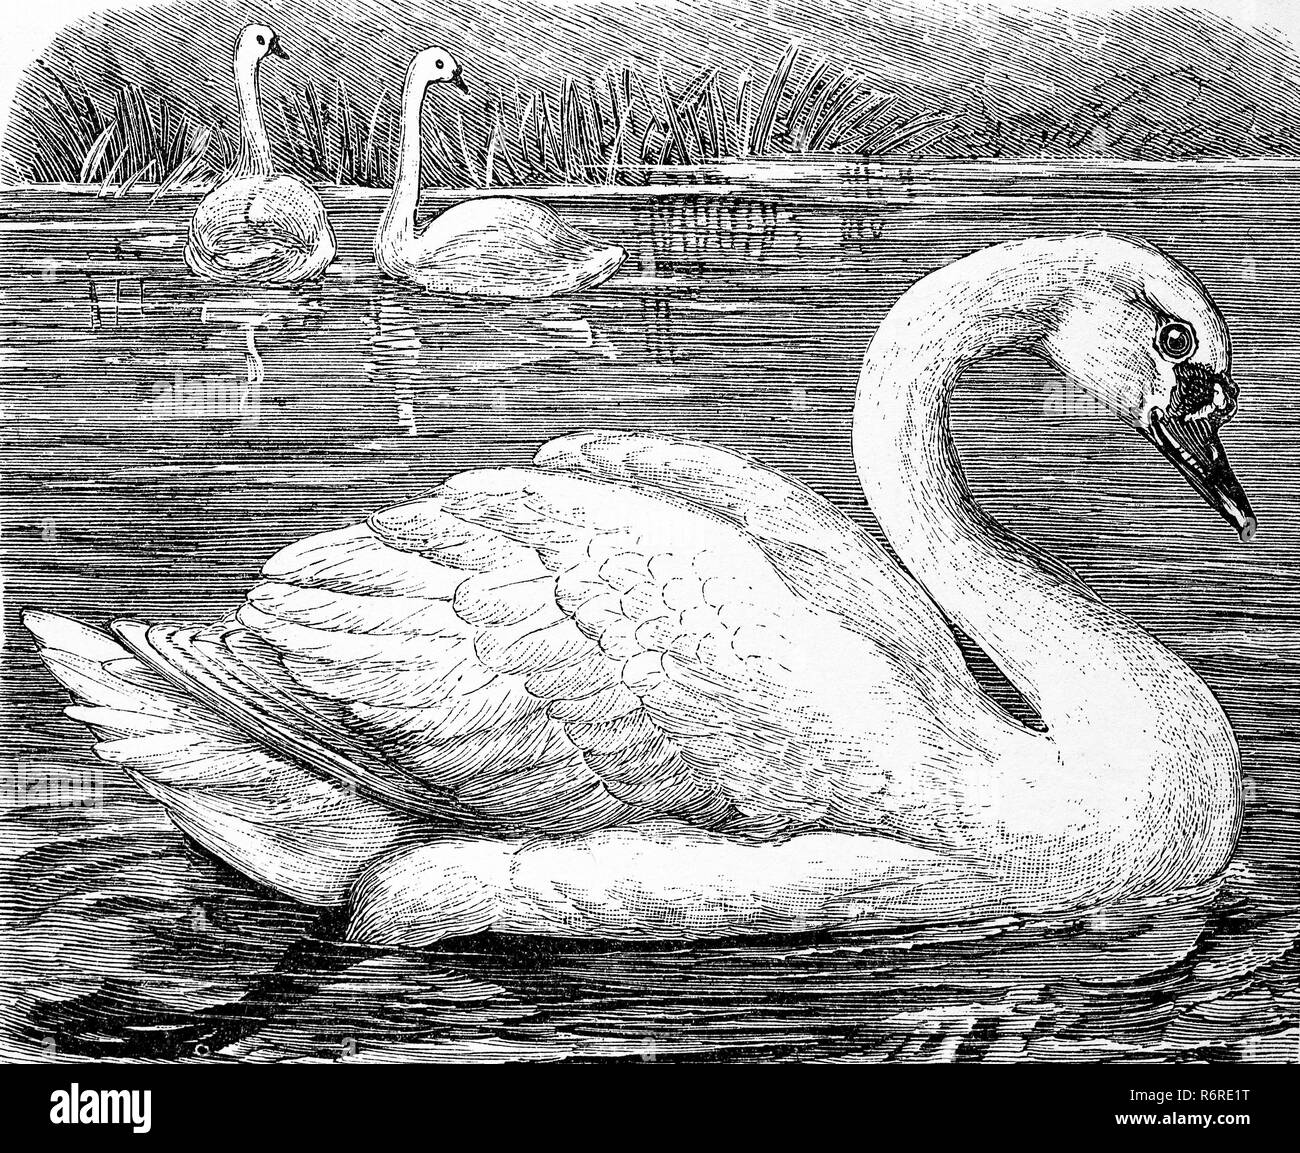 L'amélioration de la reproduction numérique, mute swan, l'établissement Hôtel¶ckerschwan, Cygnus olor, tirage original du 19ème siècle Banque D'Images